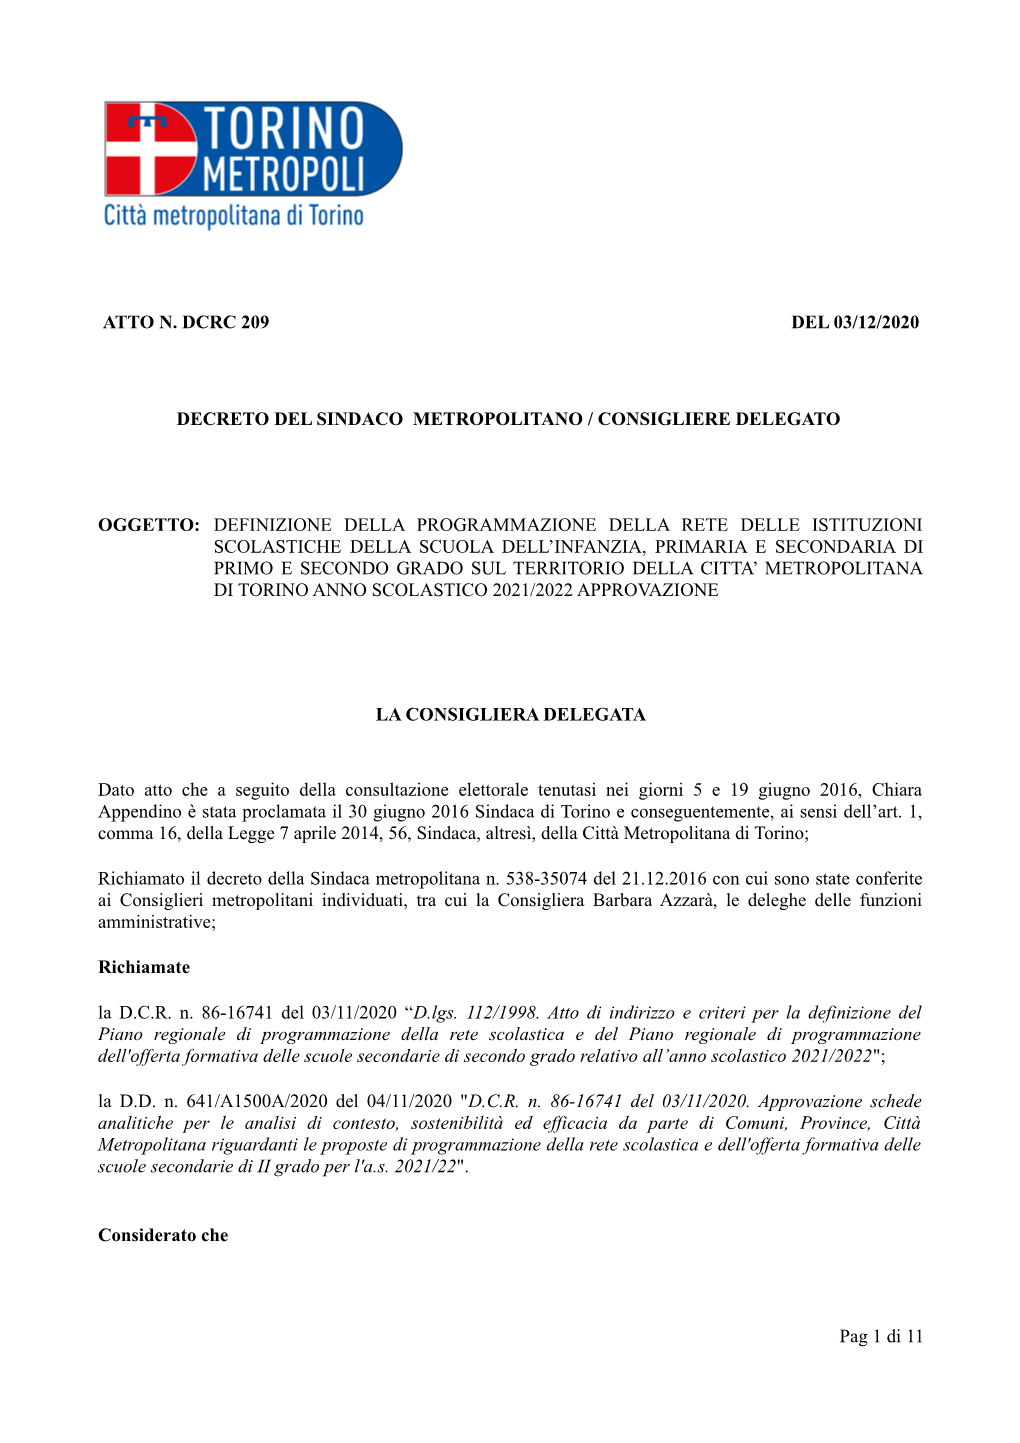 Atto N. Dcrc 209 Del 03/12/2020 Decreto Del Sindaco